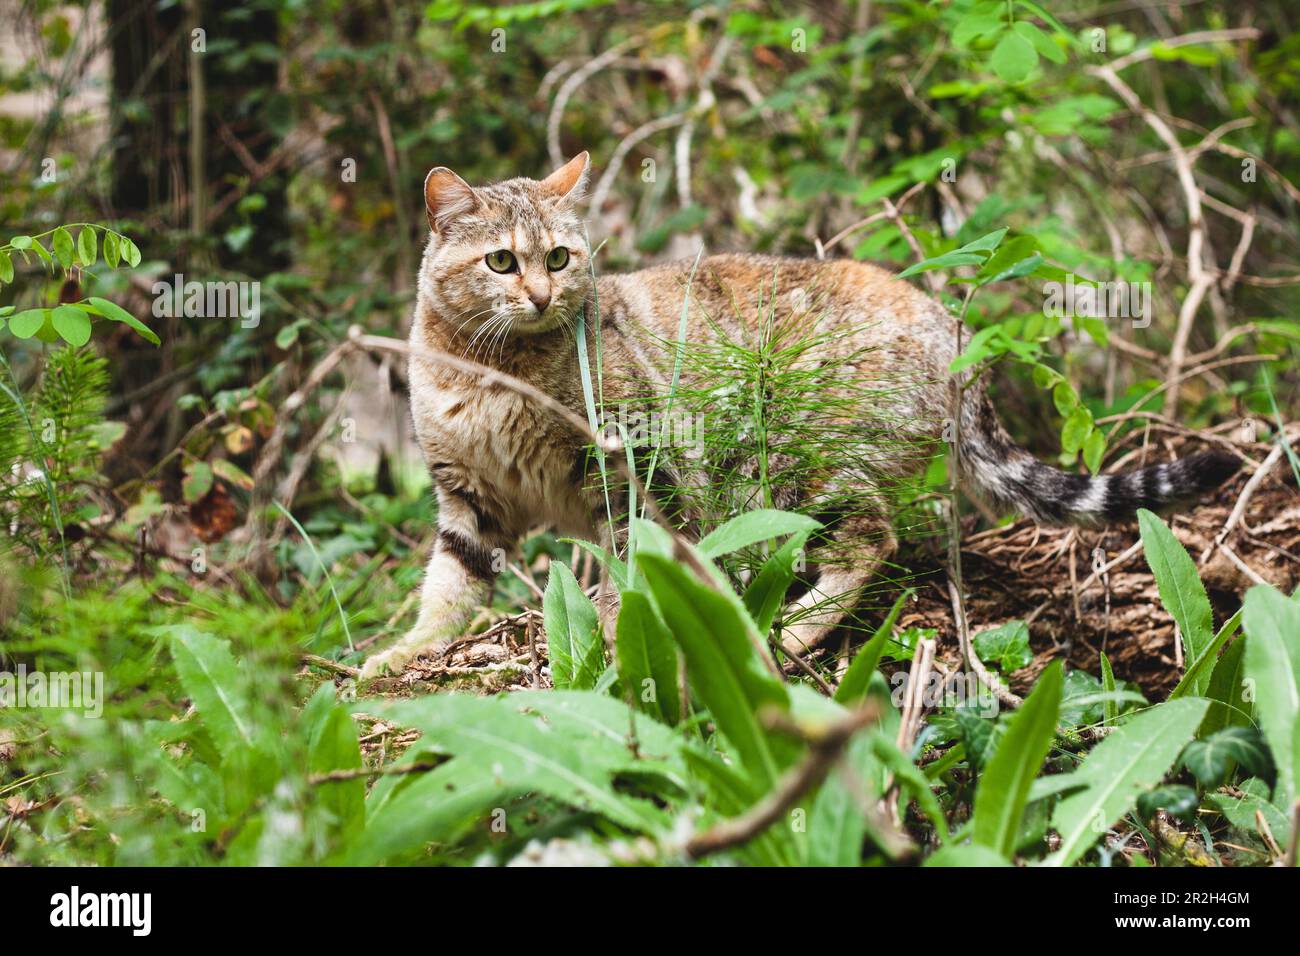 Une scène captivante se déroule dans les bois tandis qu'un chat curieux émerge de la végétation luxuriante, ajoutant une touche d'enchantement à l'environnement naturel Banque D'Images